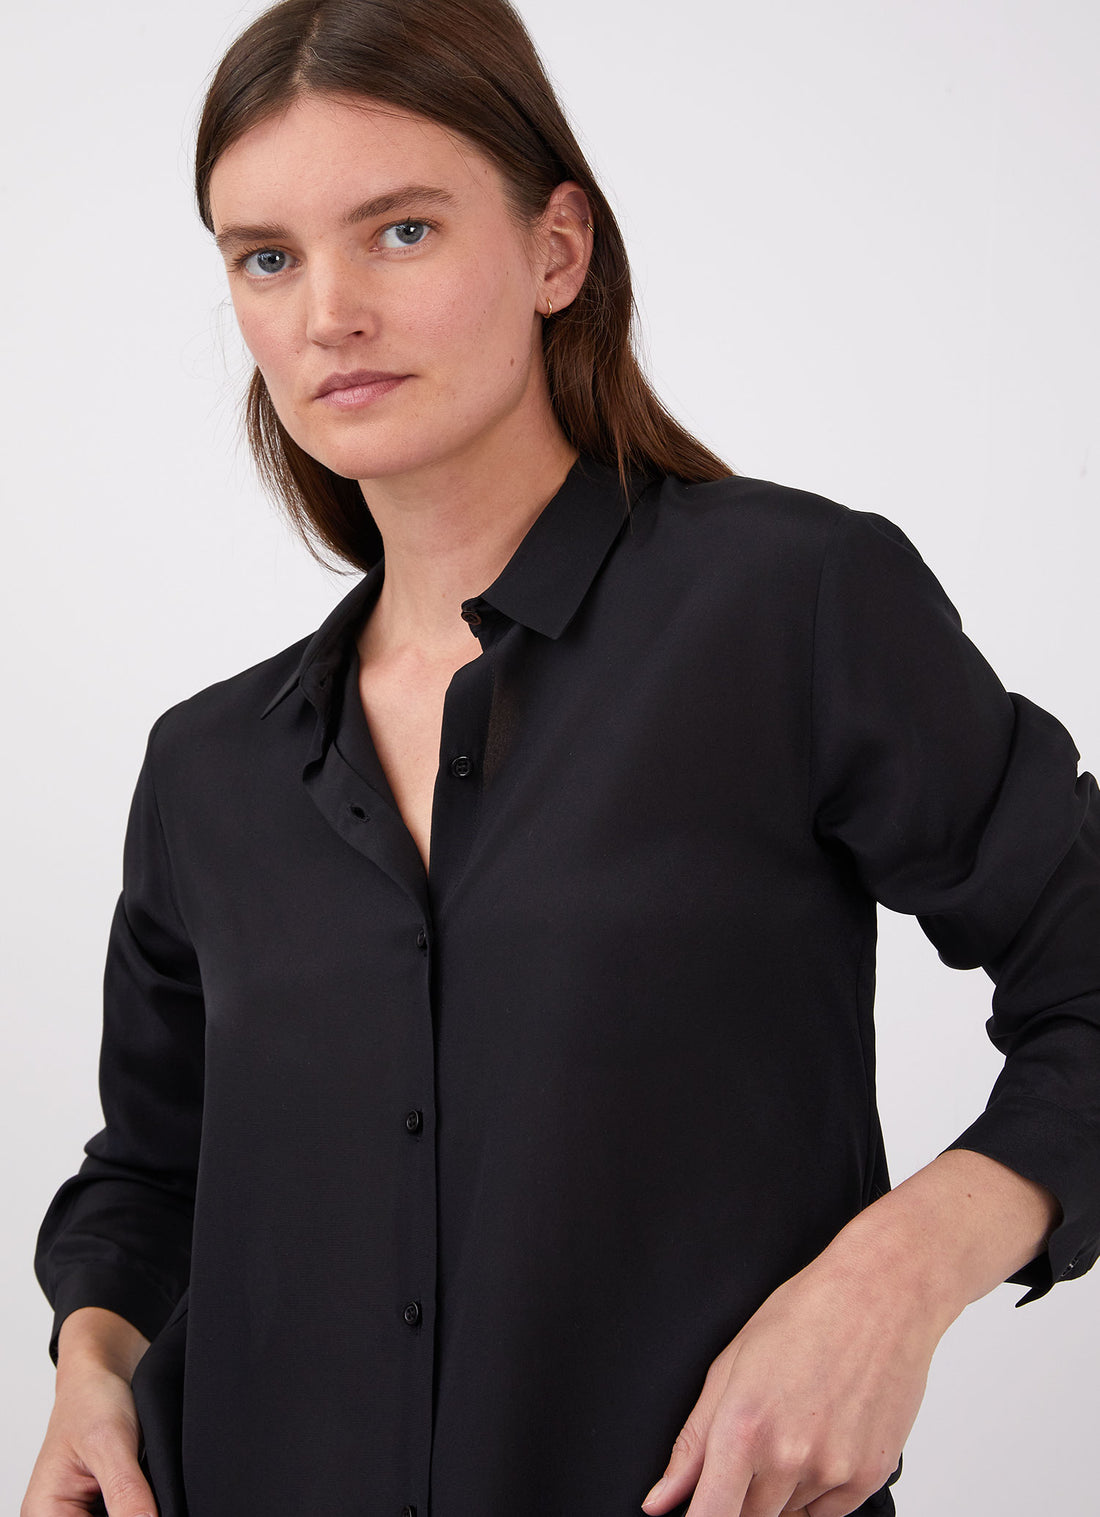 Women's Silk Blouse in Black